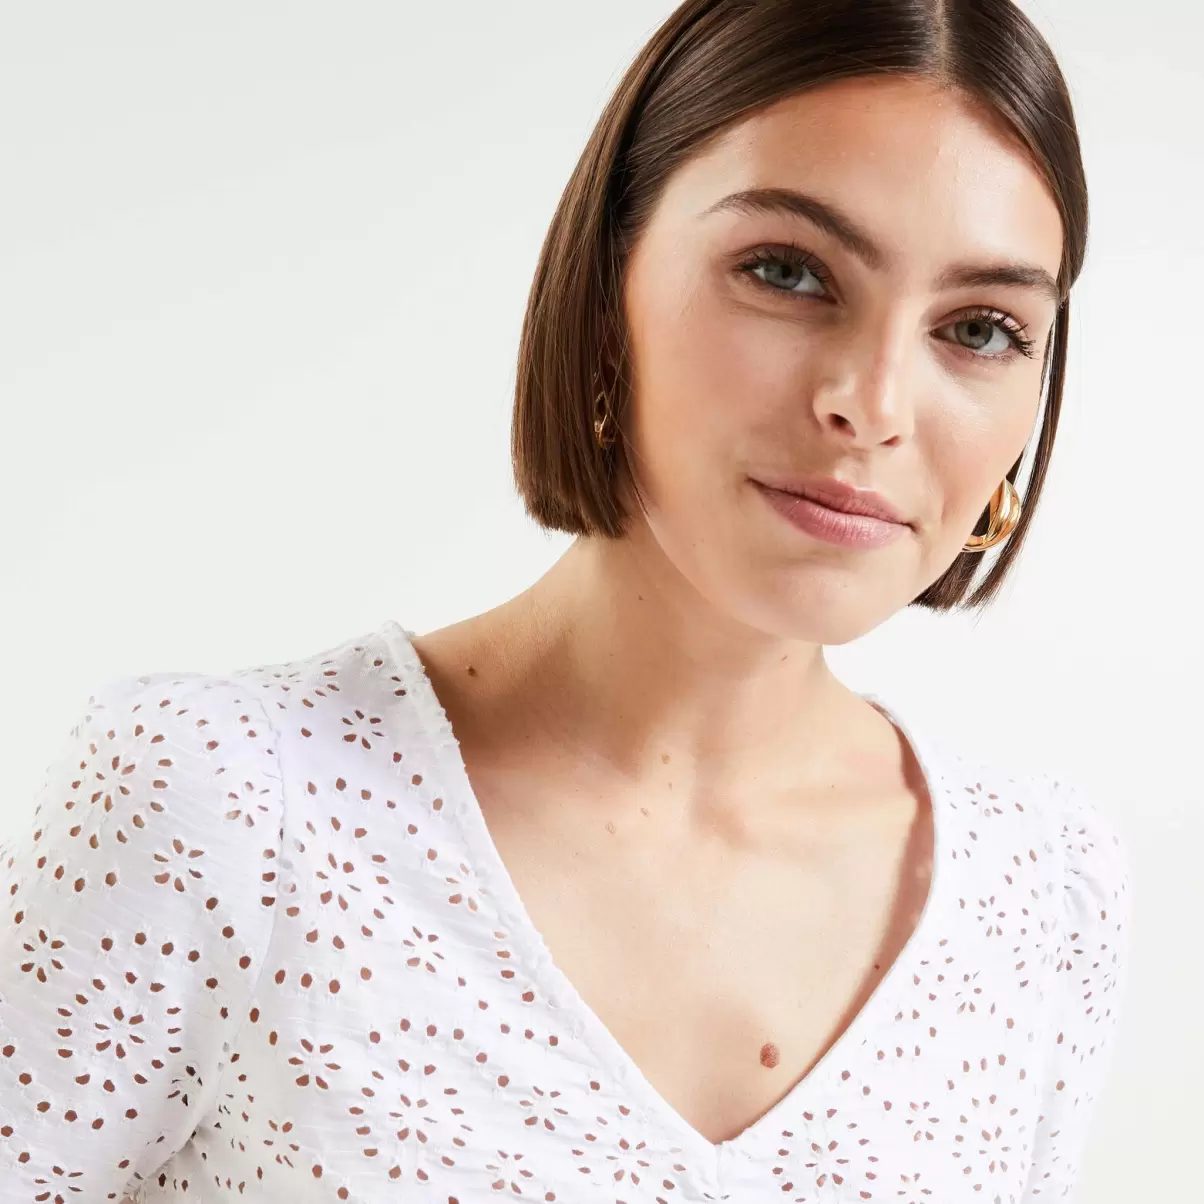 Femme Norme Grain De Malic Tshirt Ajouré Femme Blanc Casse T-Shirts & Tops - 2